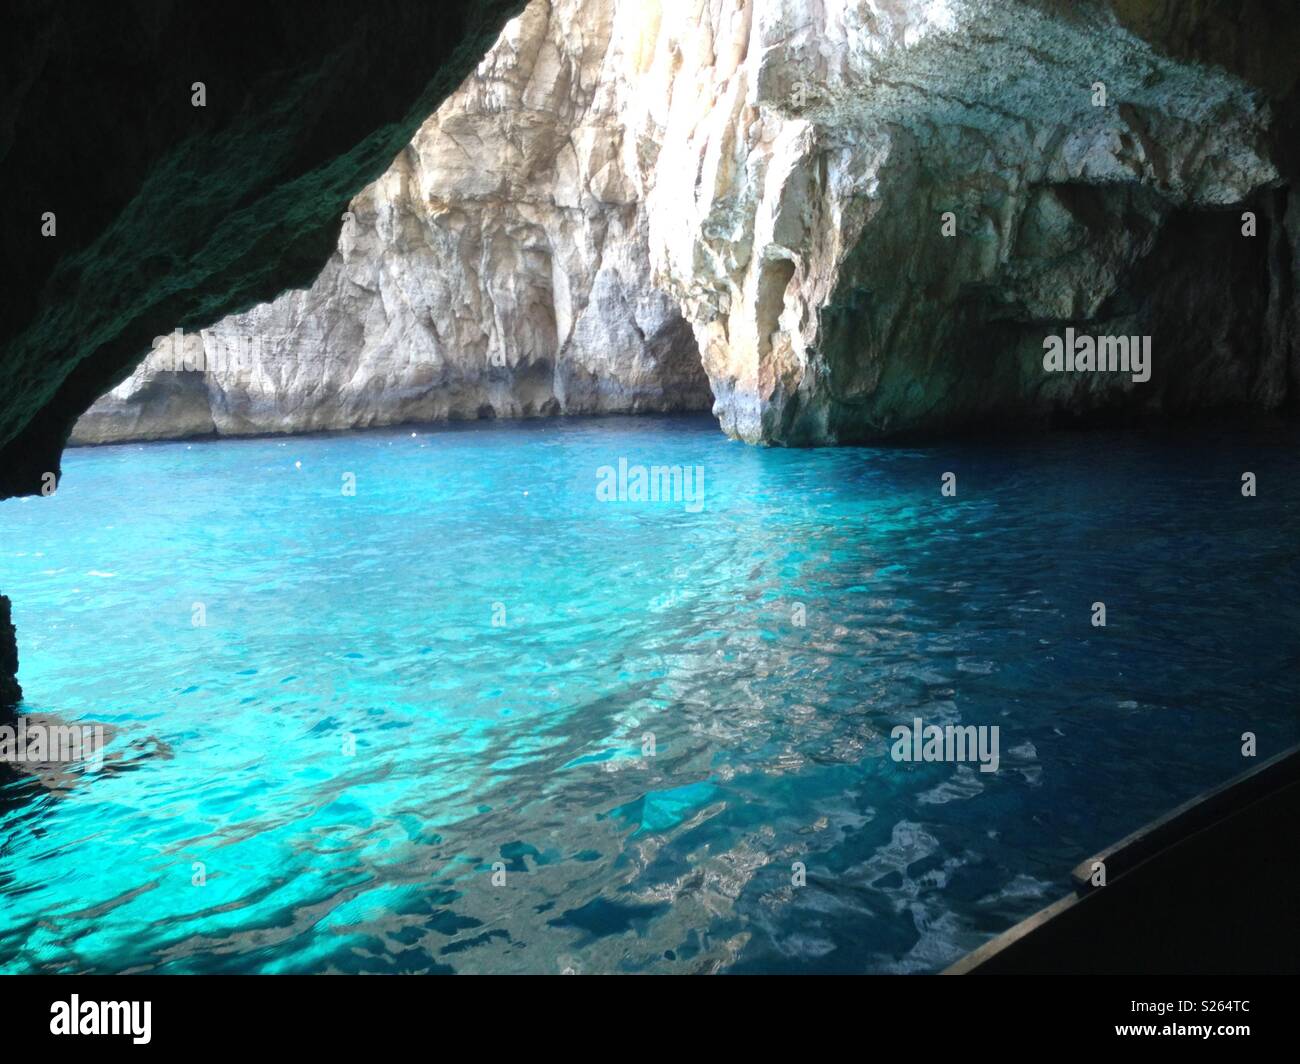 The Blue grotto Malta Stock Photo